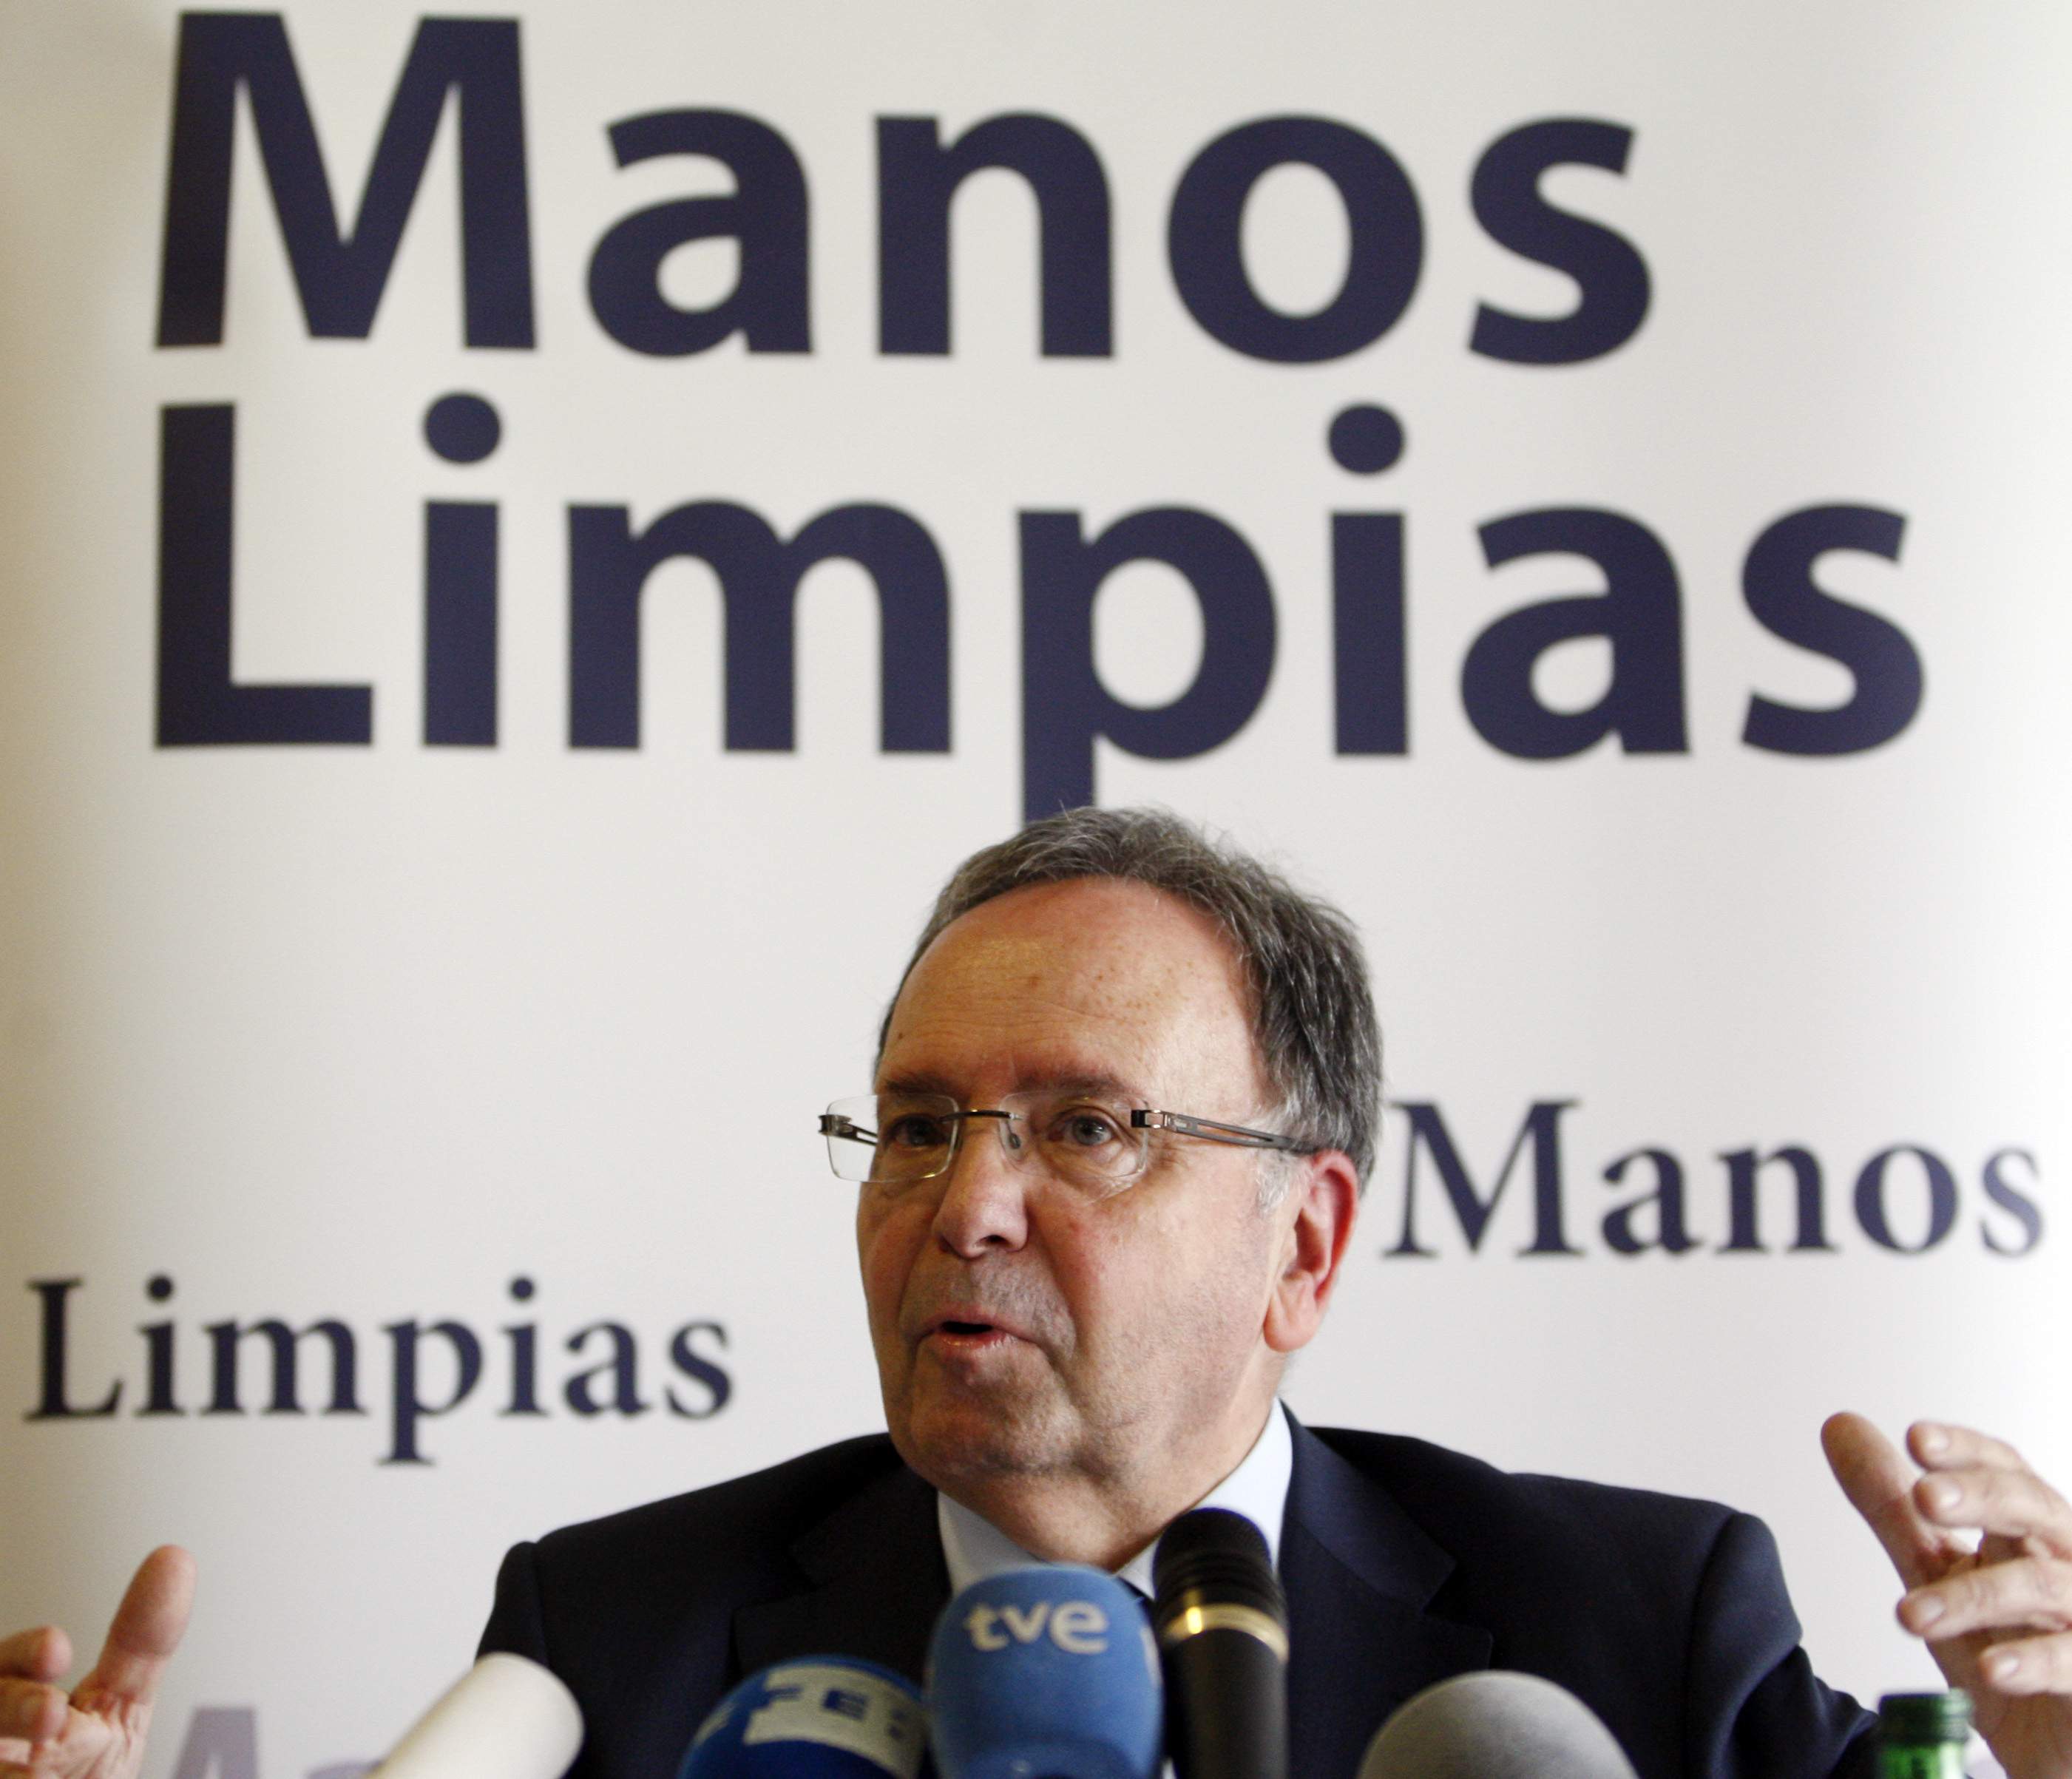 ¿Qué es Manos Limpias? El sindicato que ha perseguido al independentismo y ahora denuncia a Begoña Gómez